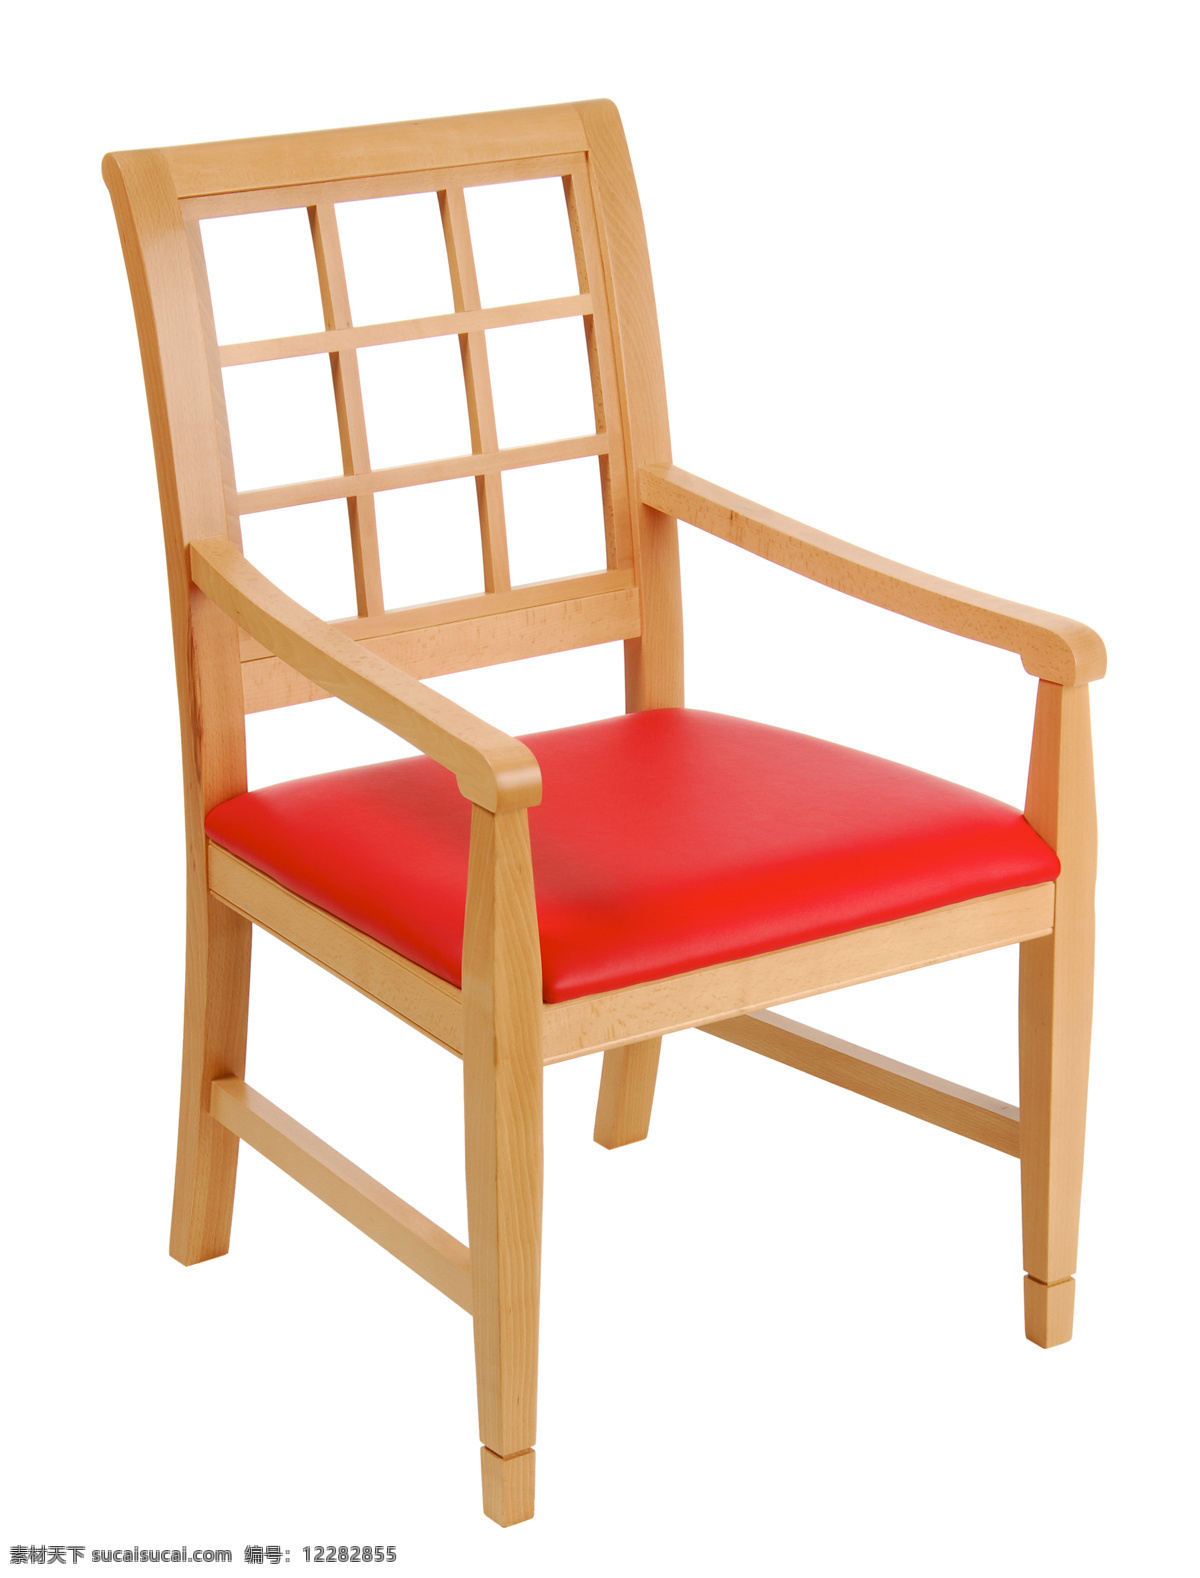 木 凳子 椅子 木椅子 家具 木制家具 靠背椅 沙发 垫子 家具电器 生活百科